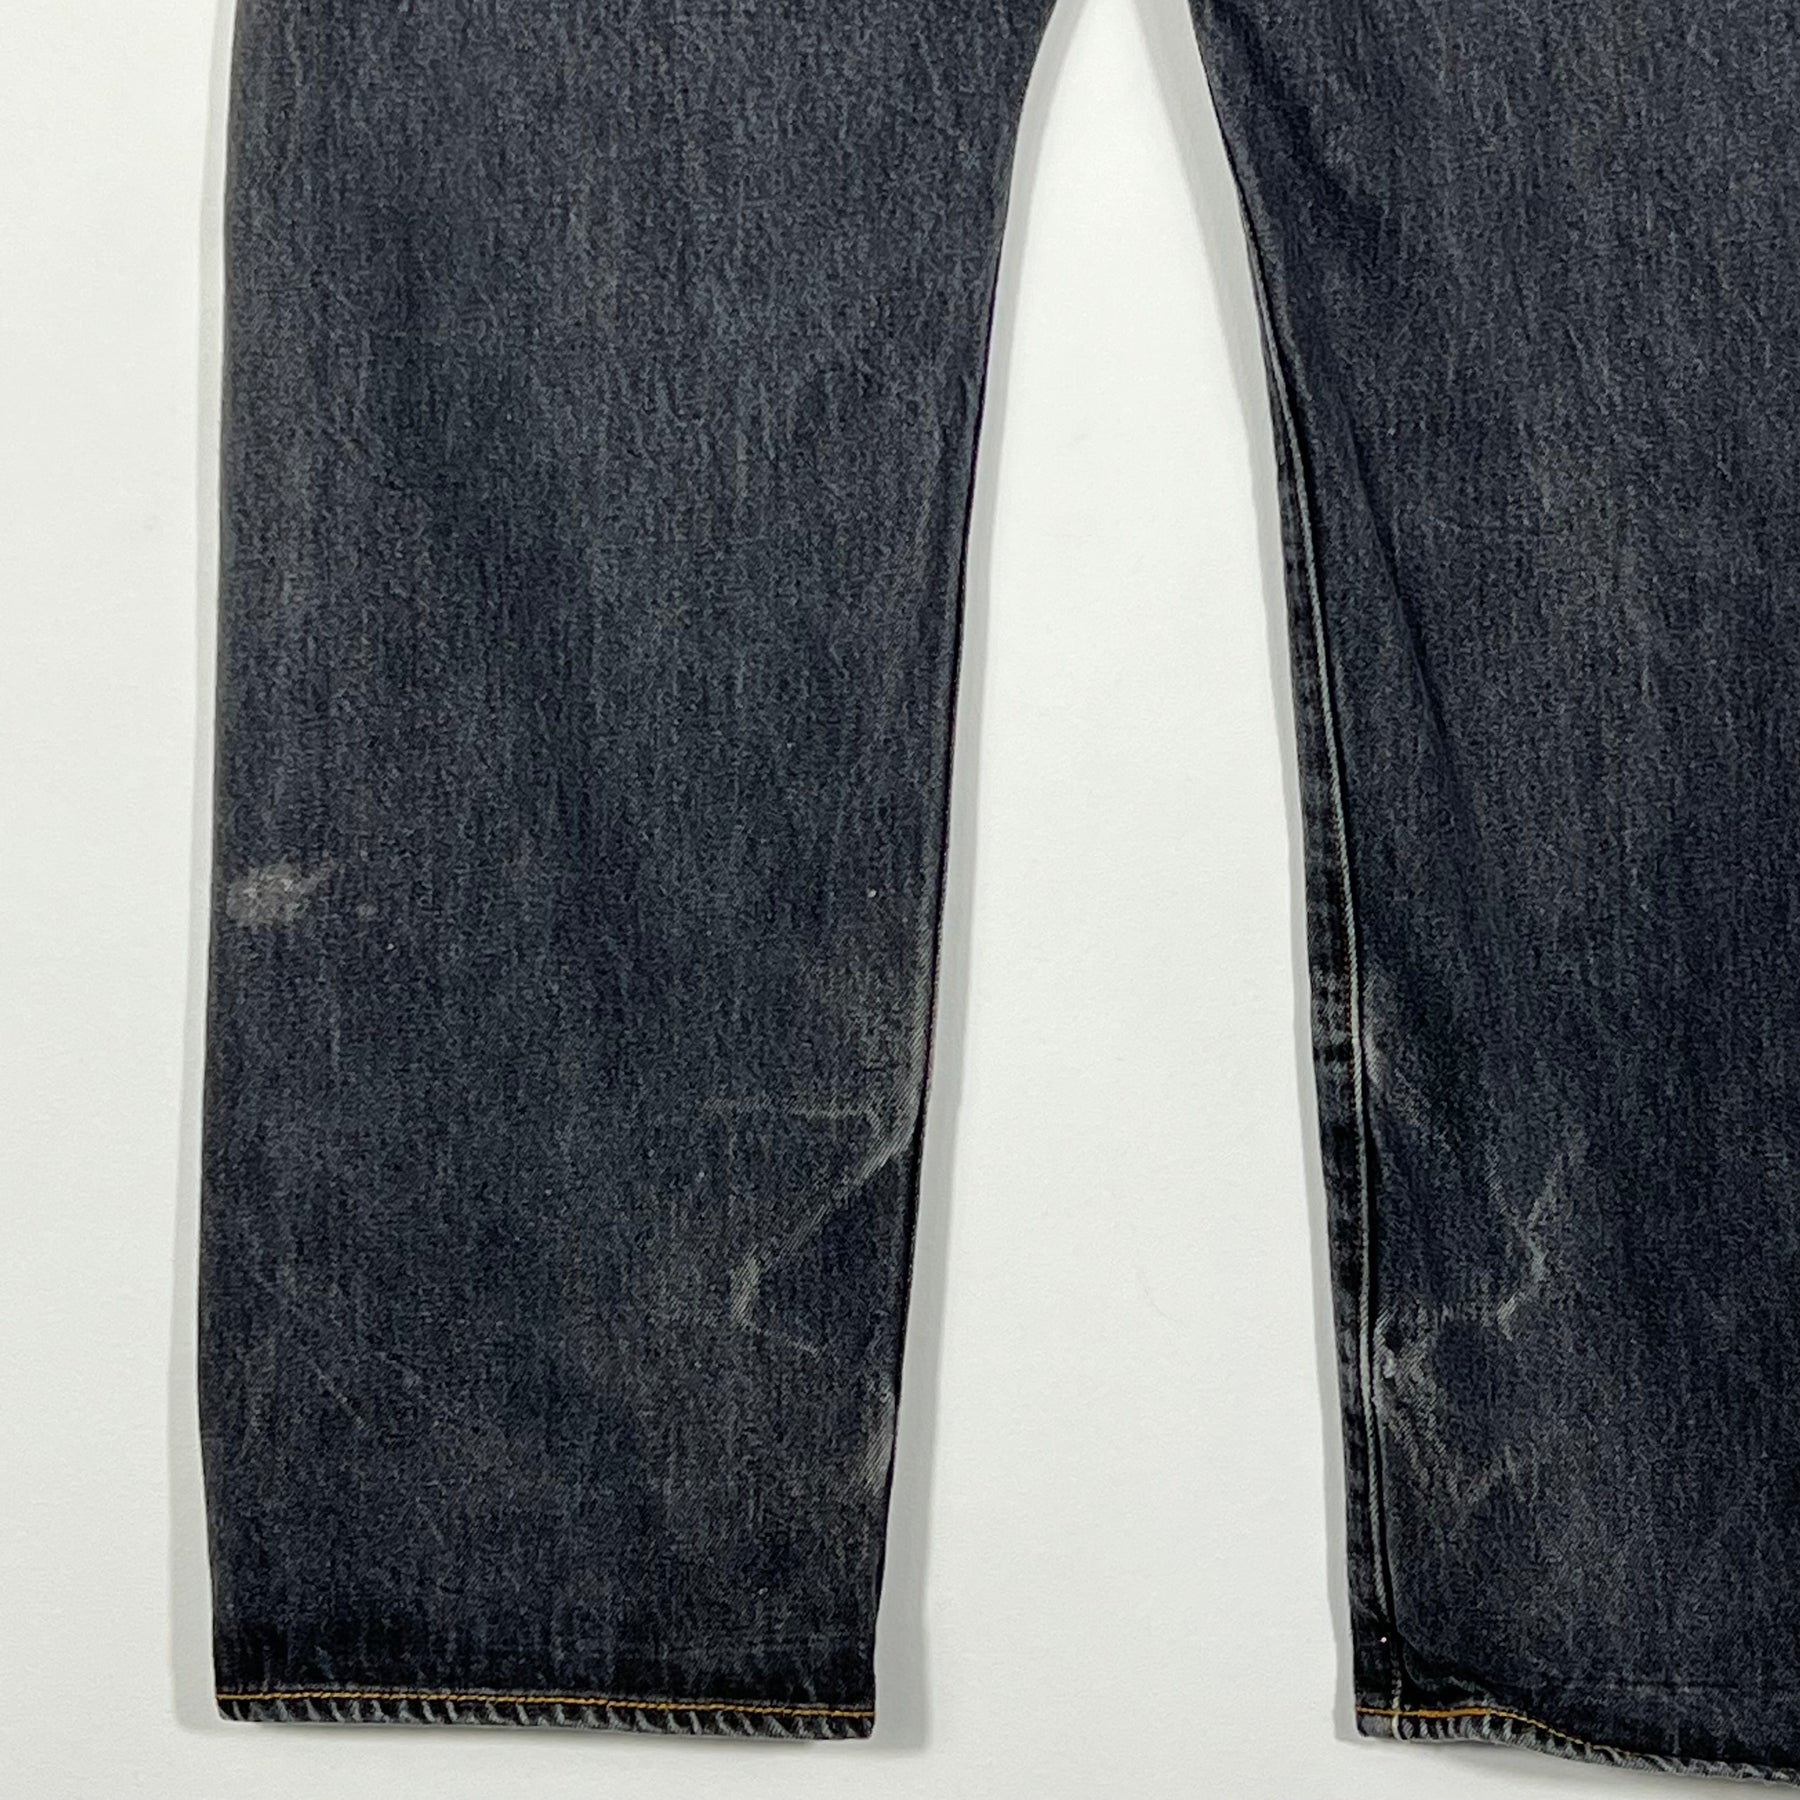 Vintage Levis 501 Jeans - Men's 38/32